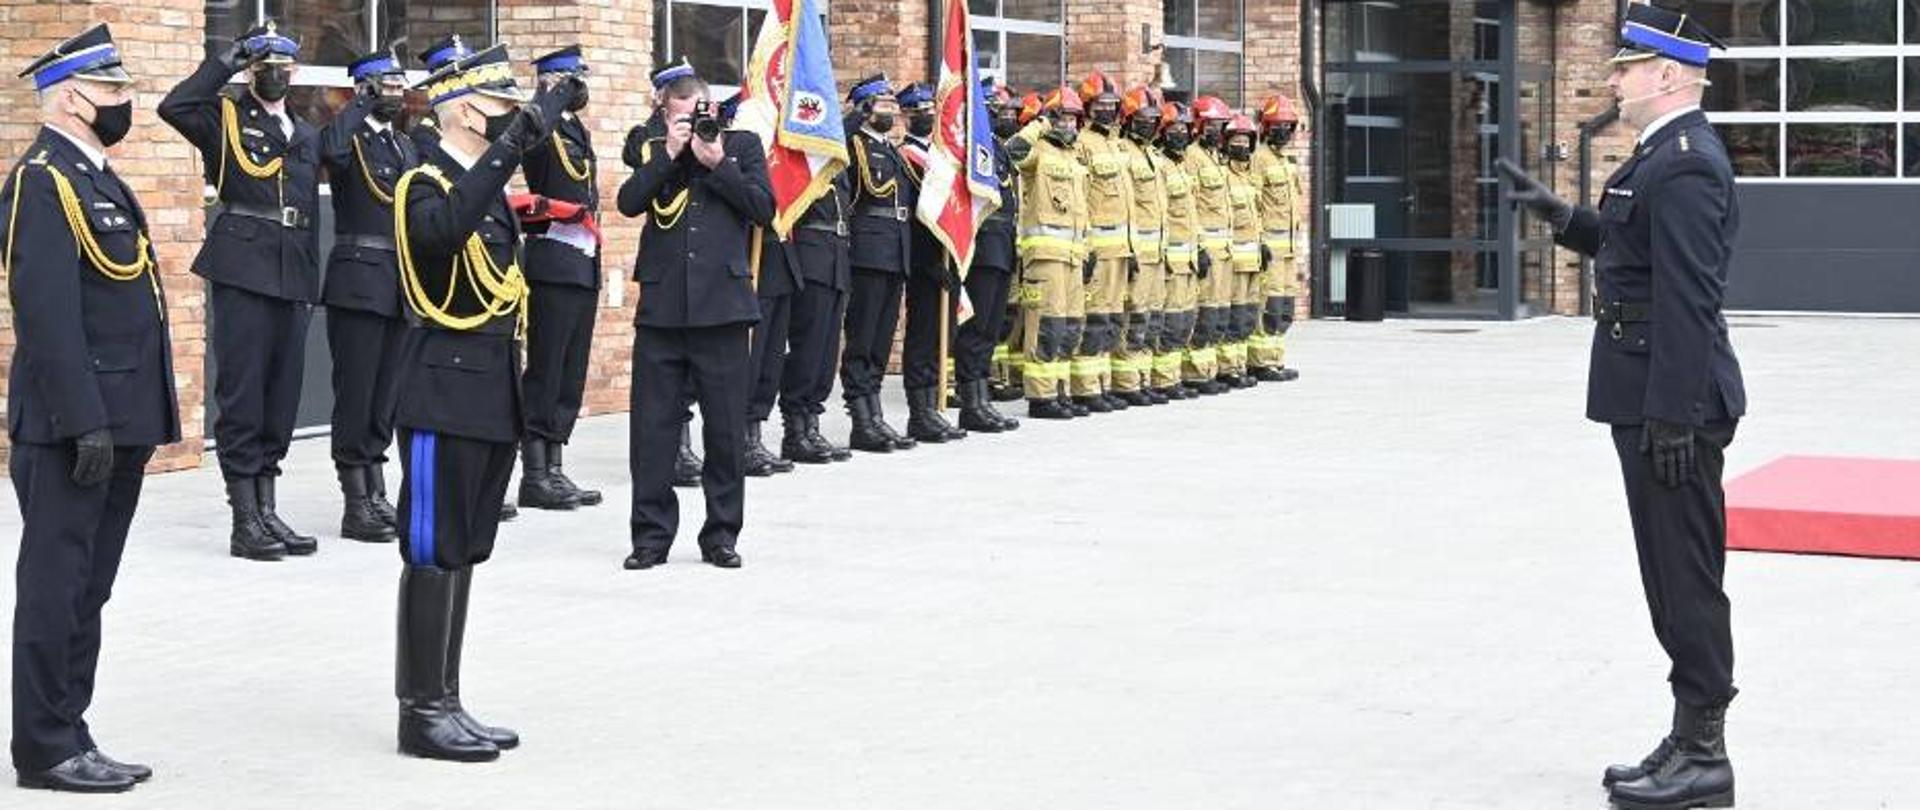 Po lewej stronie na pierwszym planie widać strażaków w umundurowaniu galowym, strażacy salutują, jeden z nich robi trzyma w dłoniach aparat i robi zdjęcie strażakowi, który stoi po lewej stronie. Na dalszym planie widać strażaków w ubraniach specjalnych a w tle budynek.